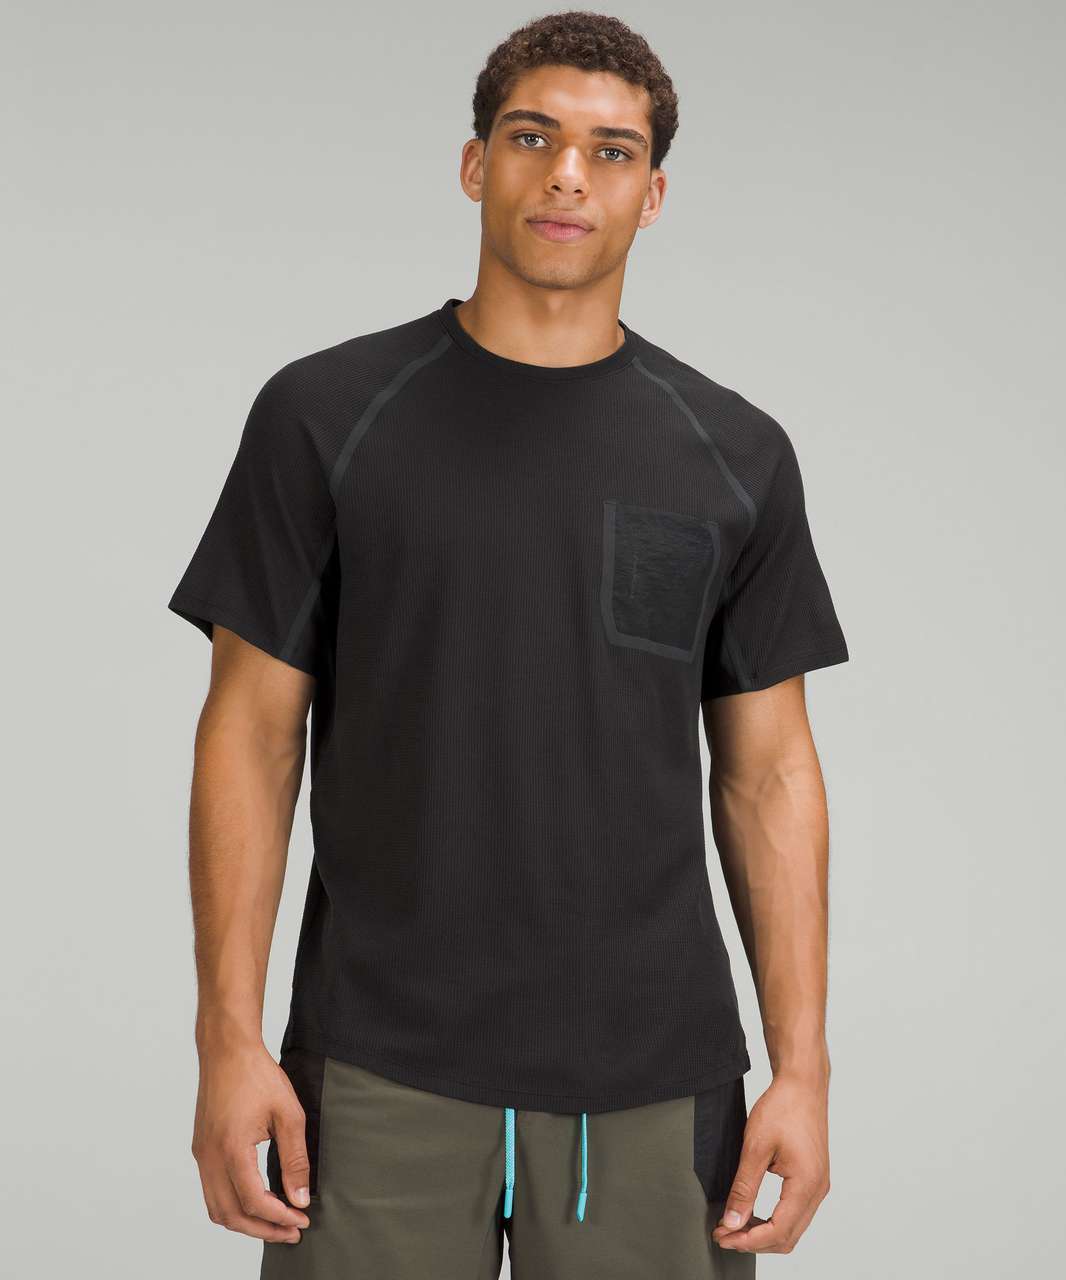 Lululemon Ventilated Hiking Short Sleeve Shirt - Black